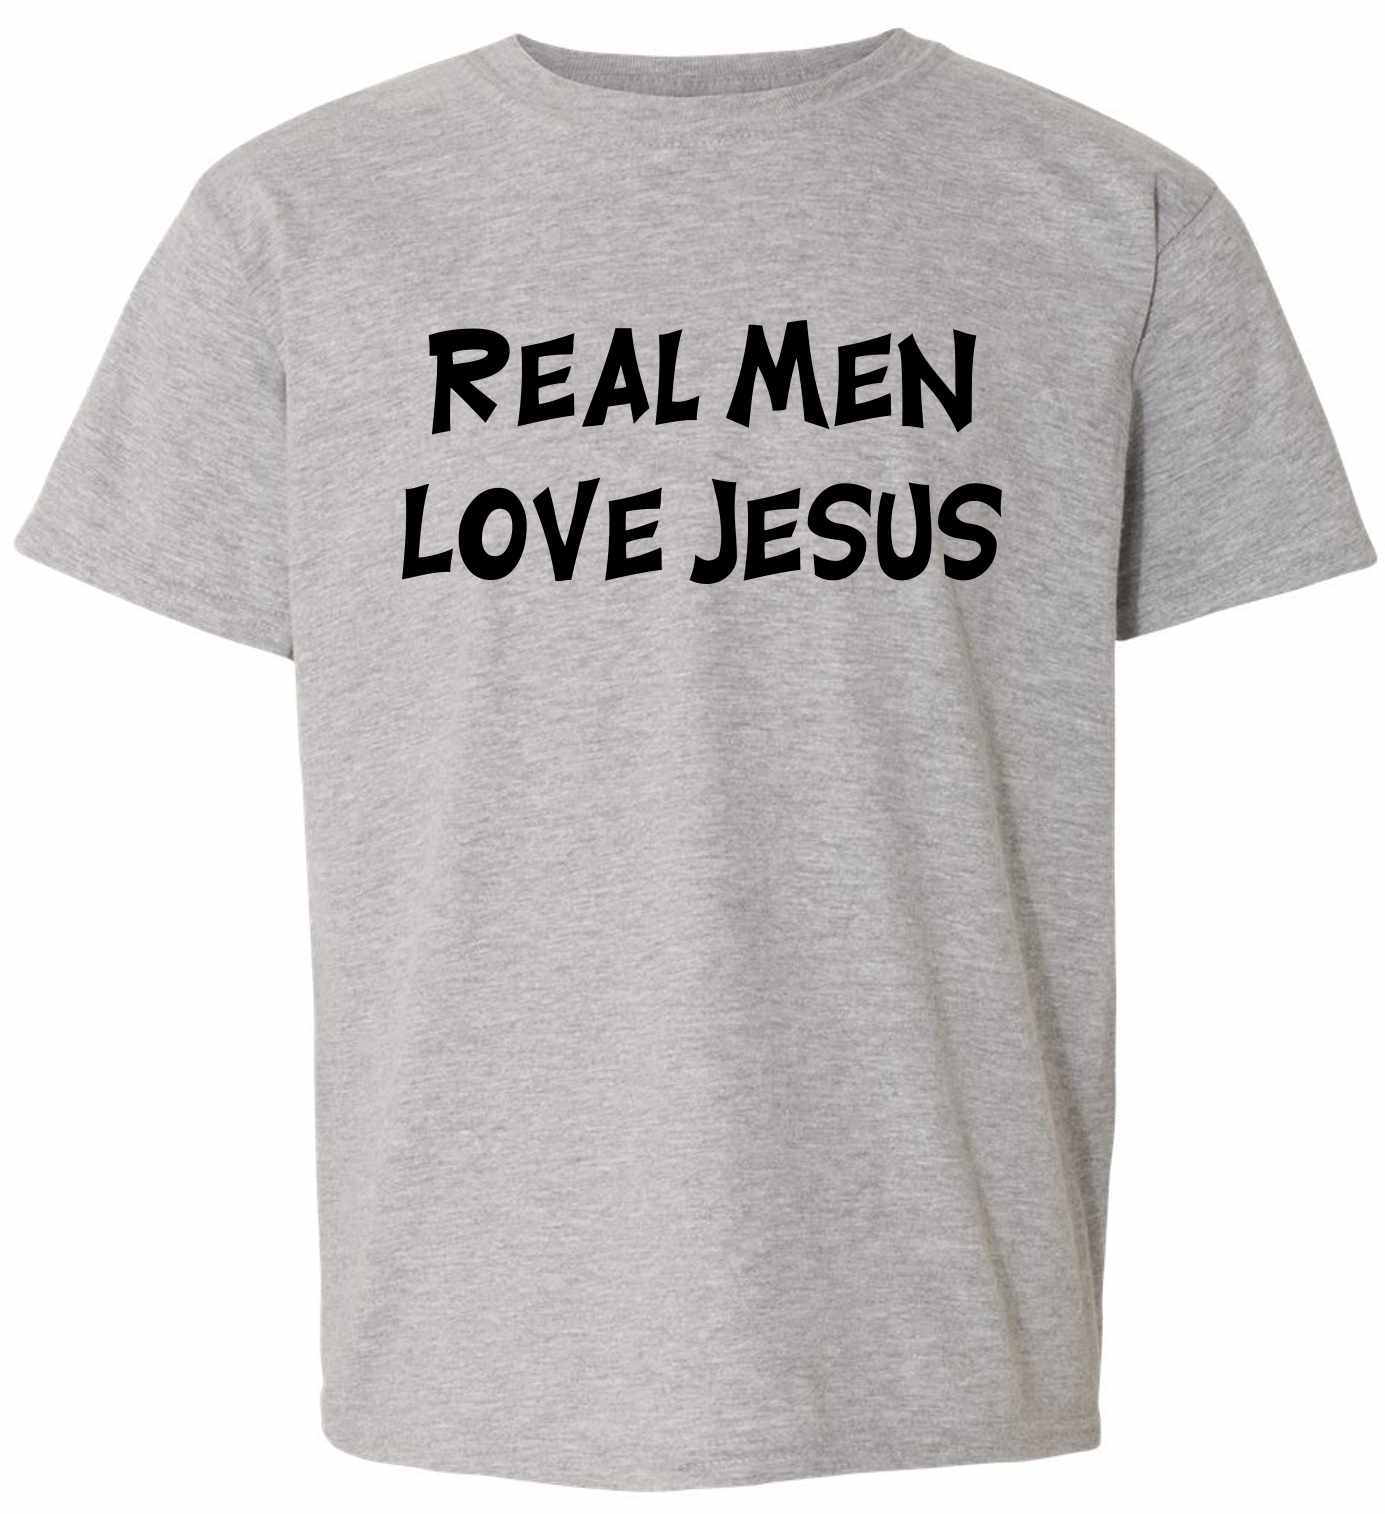 Real Men Love Jesus on Kids T-Shirt